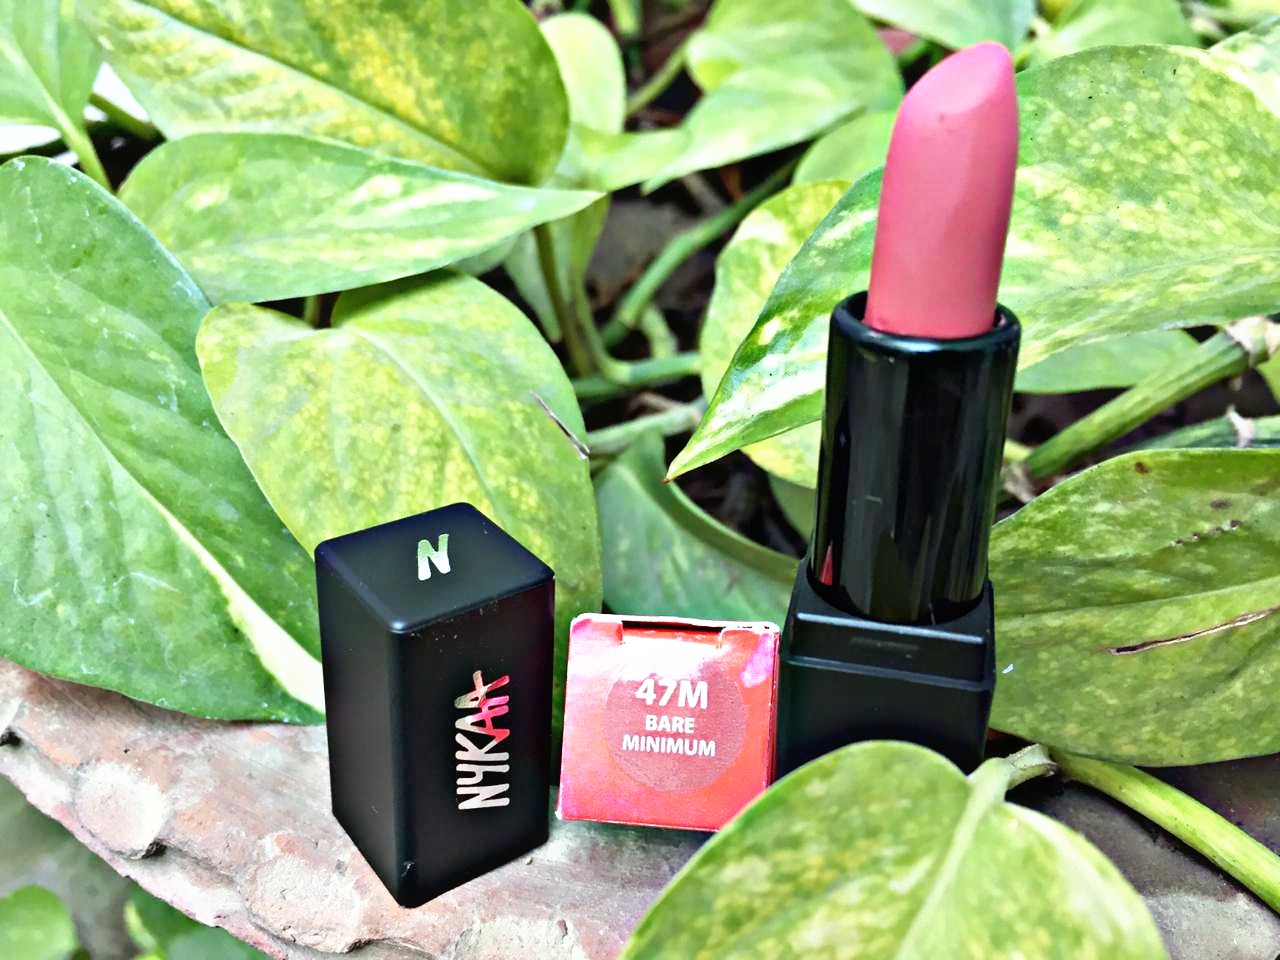 Nykaa Matte Mini Lipstick Bare Minimum (47M)| Review & Swatch